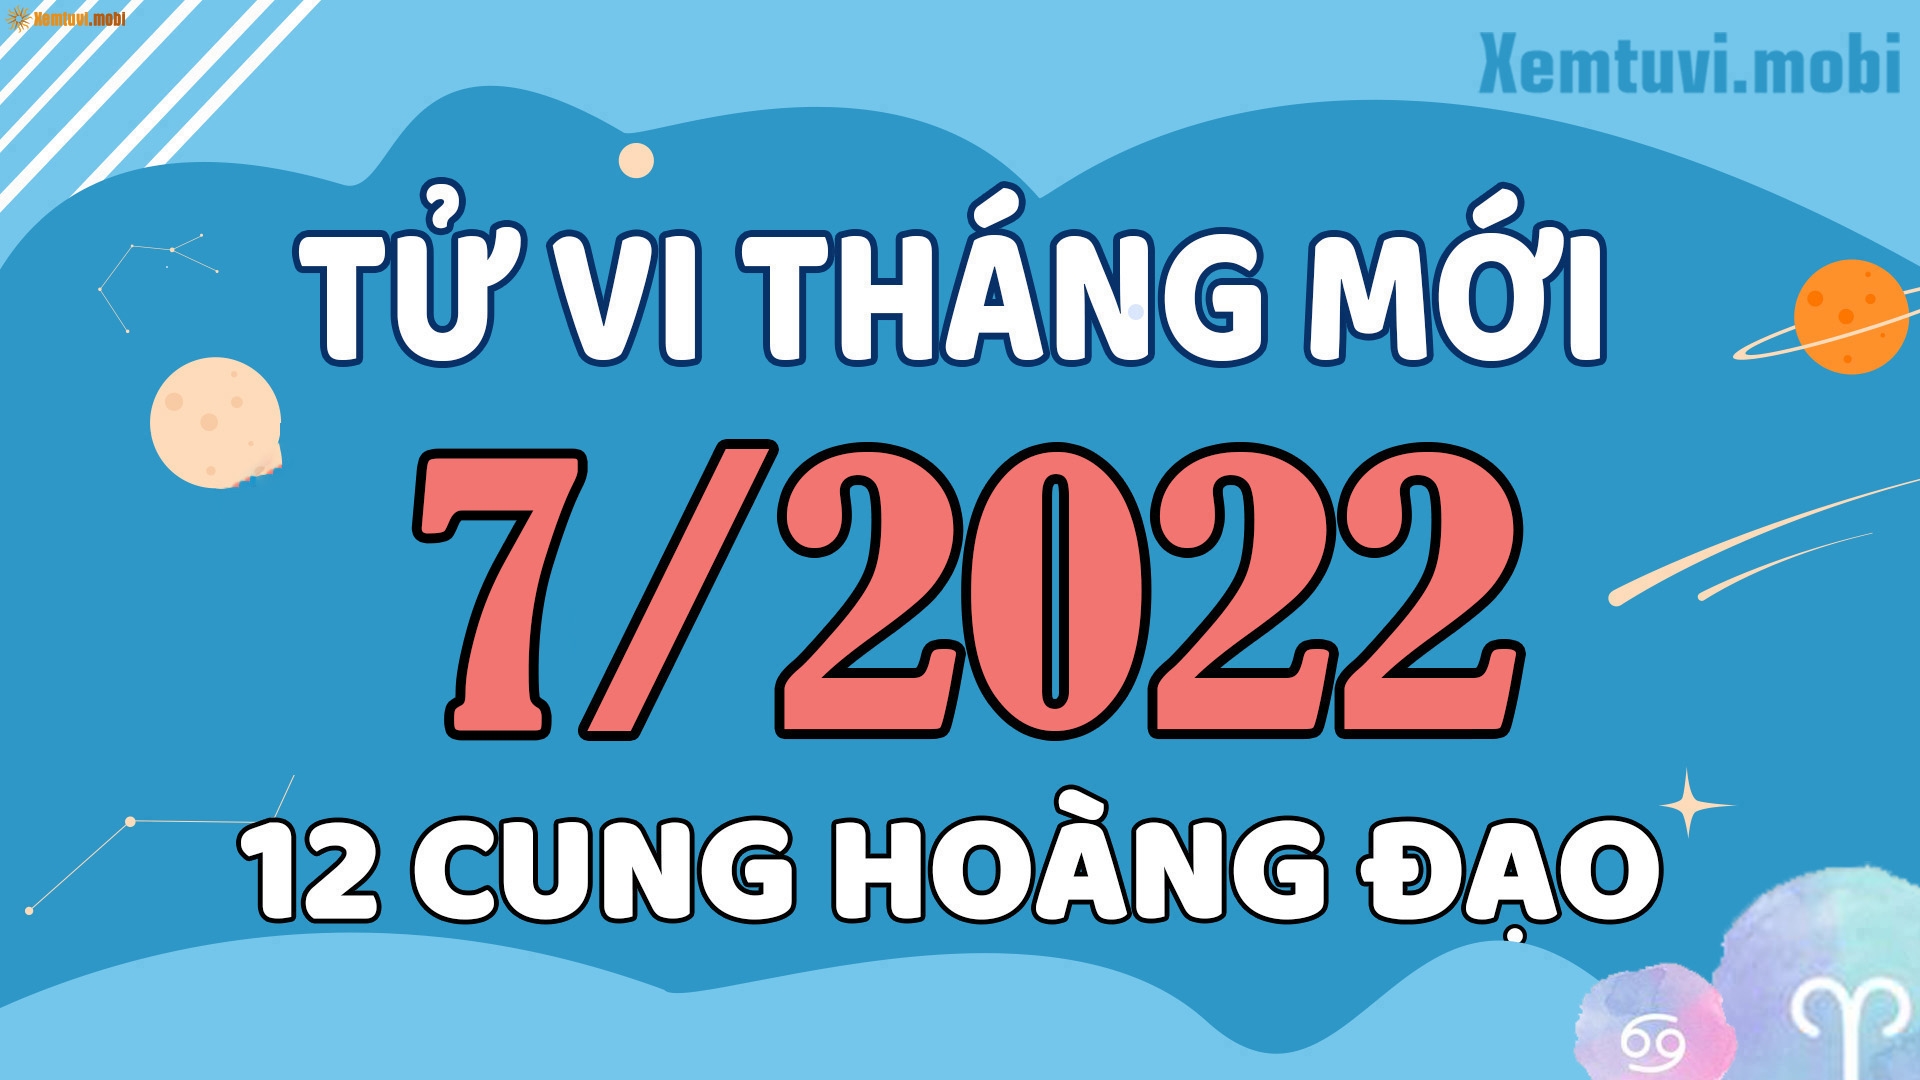 Tử vi ngày mai của 12 cung hoàng đạo 7/12/2022: Cự Giải tài lộc sụt giảm, Bạch Dương tình cảm ấm êm